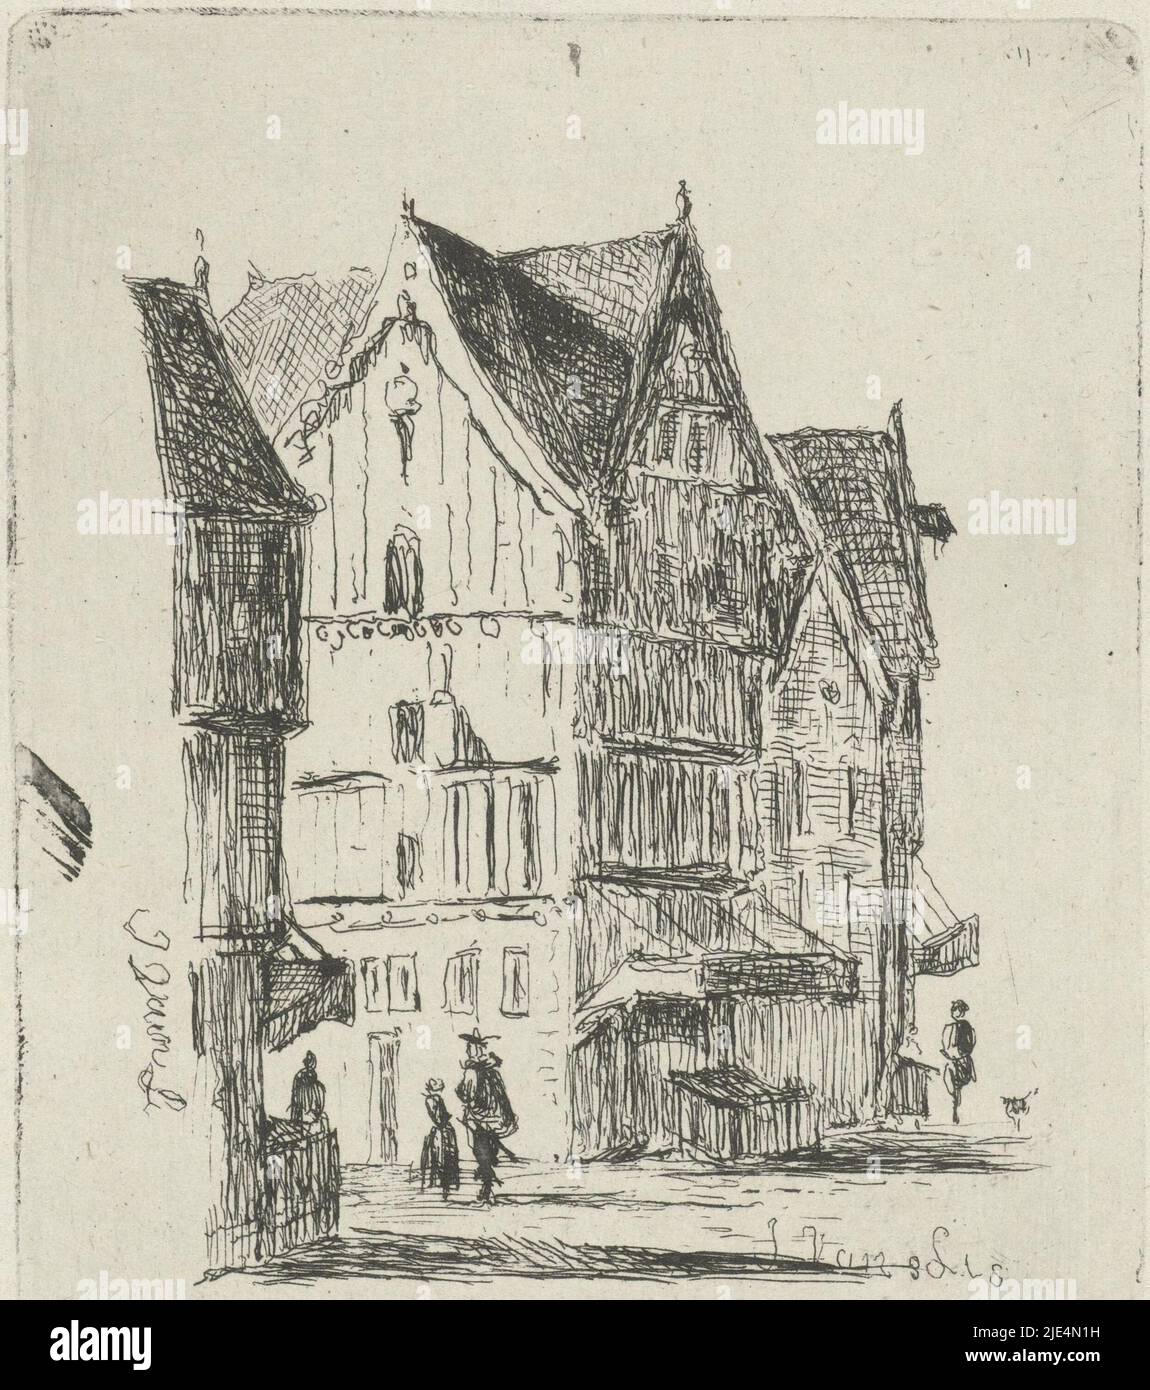 Vue sur la rue avec maisons en bois et quelques marcheurs, vue sur la rue, imprimerie: Joannes van Liefland, (mentionné sur l'objet), 1819 - 1861, papier, gravure, h 92 mm × l 78 mm Banque D'Images